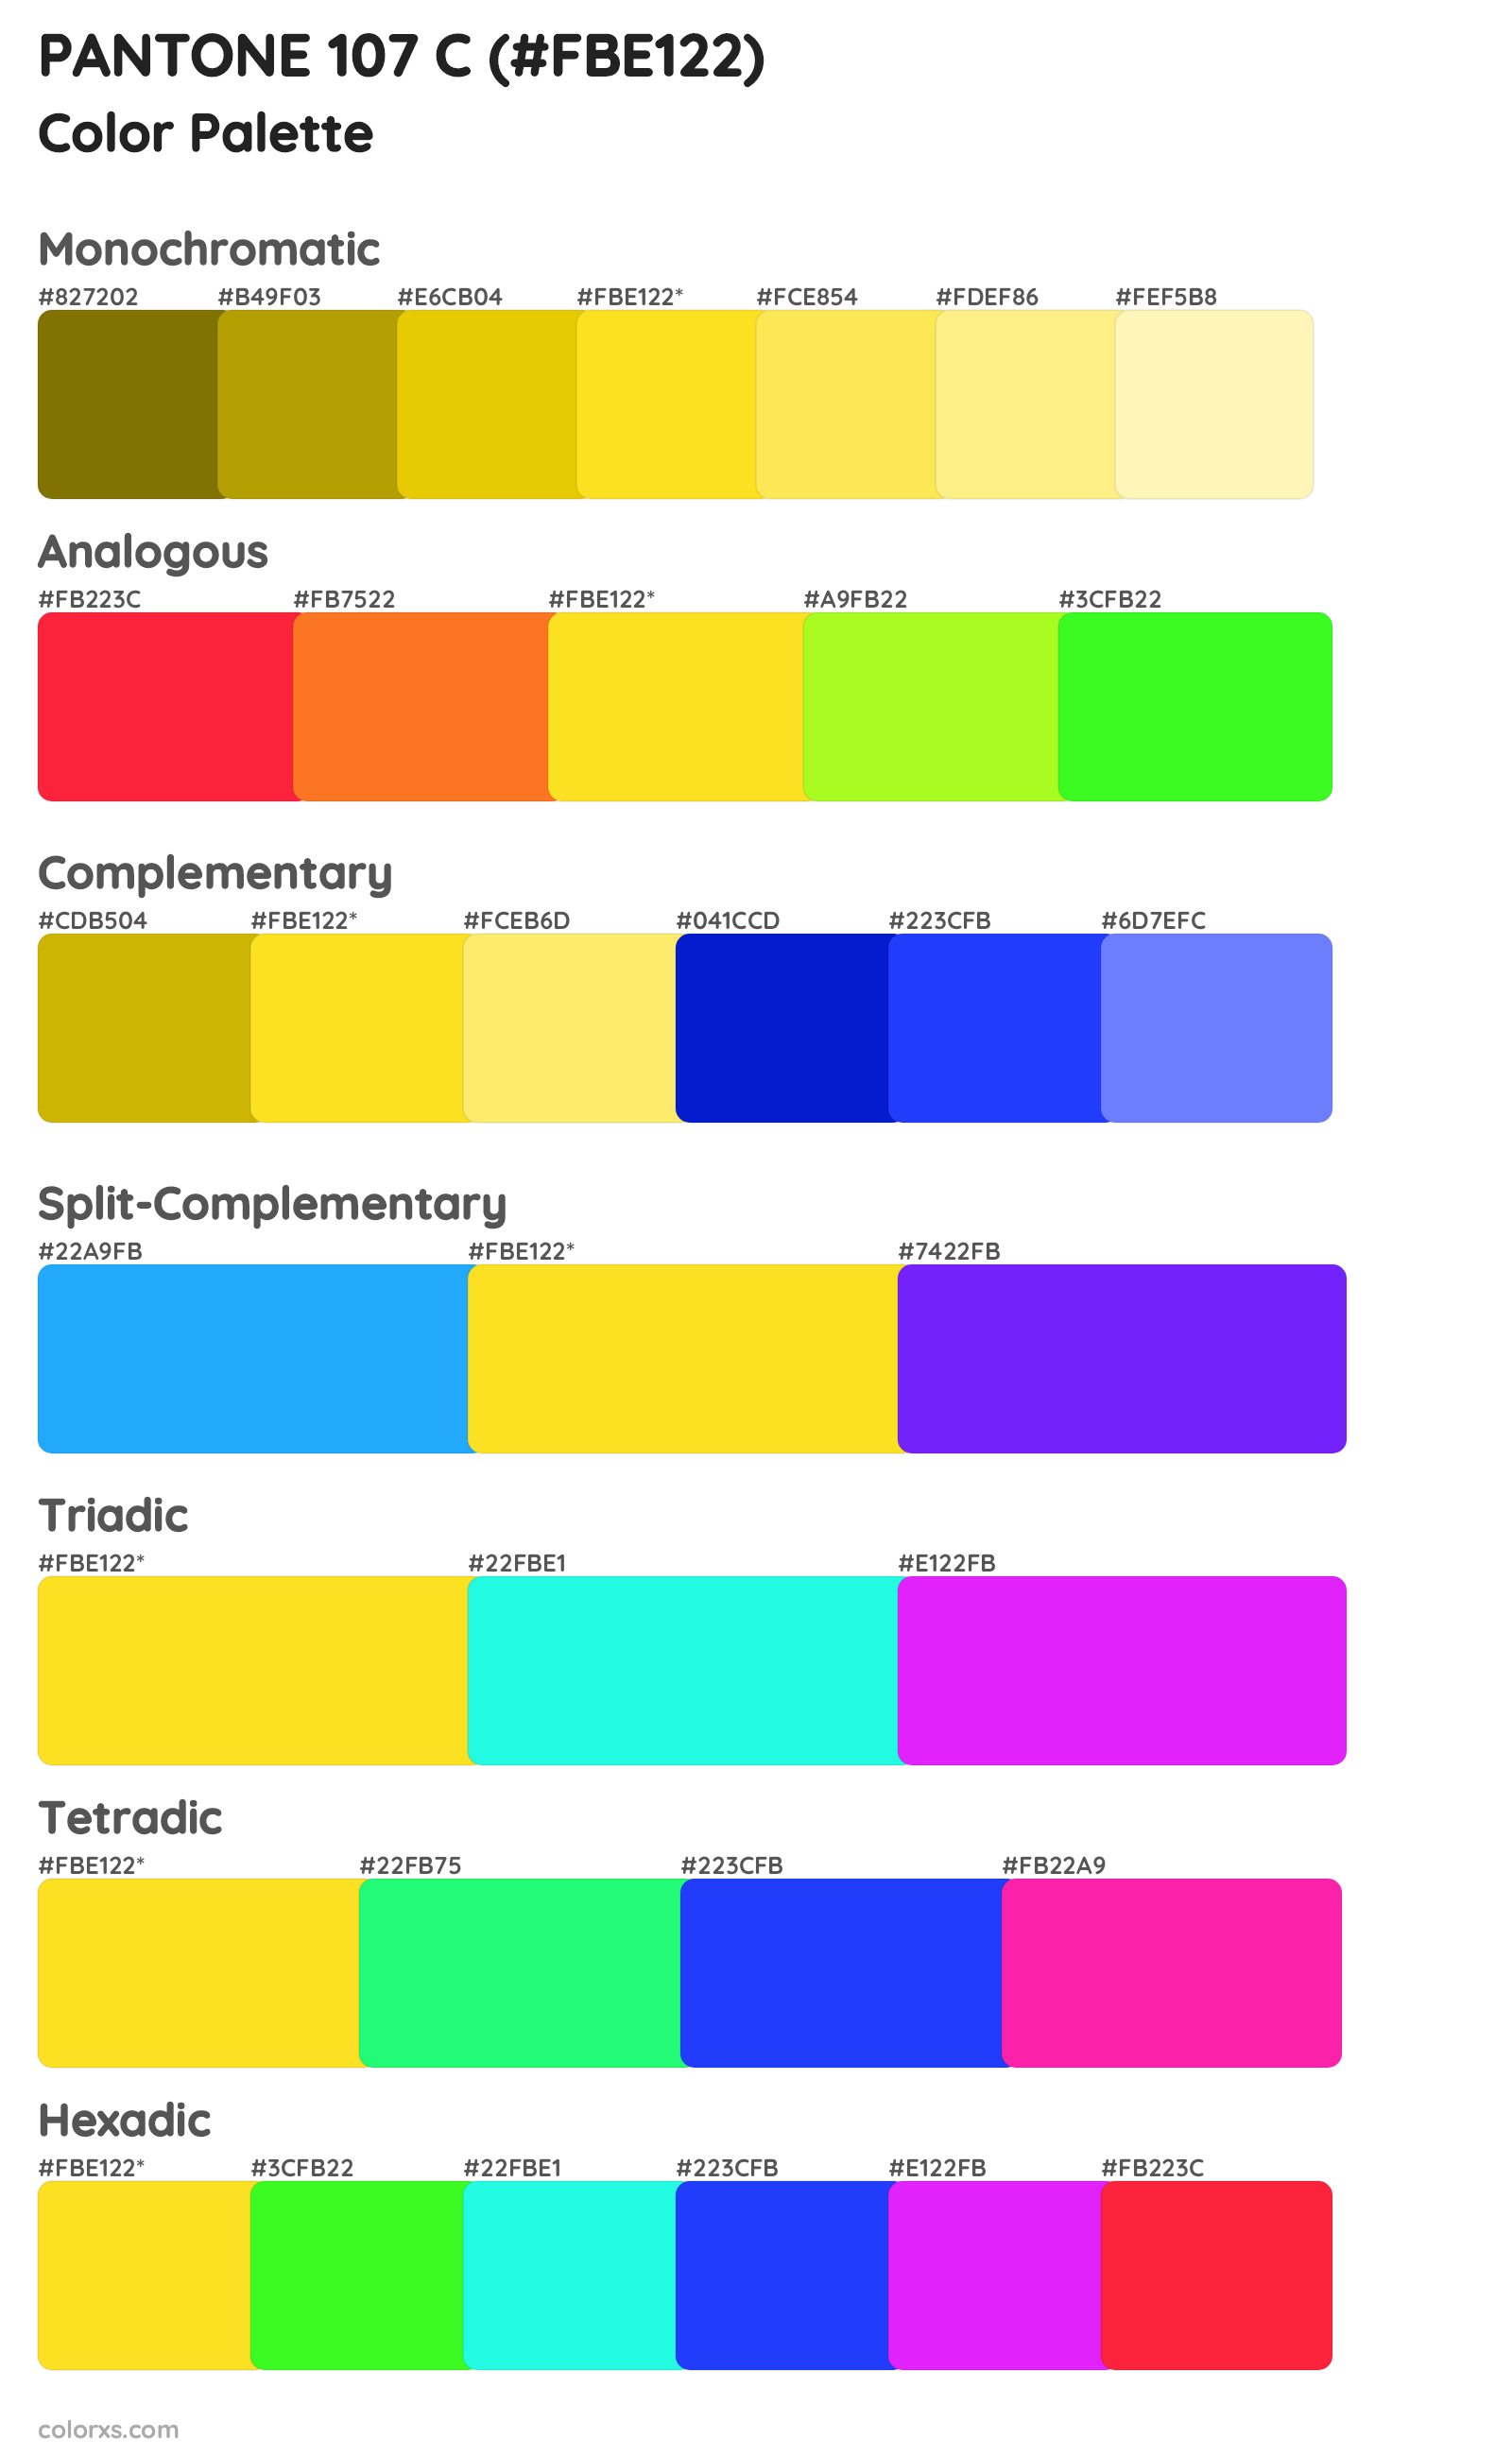 PANTONE 107 C Color Scheme Palettes